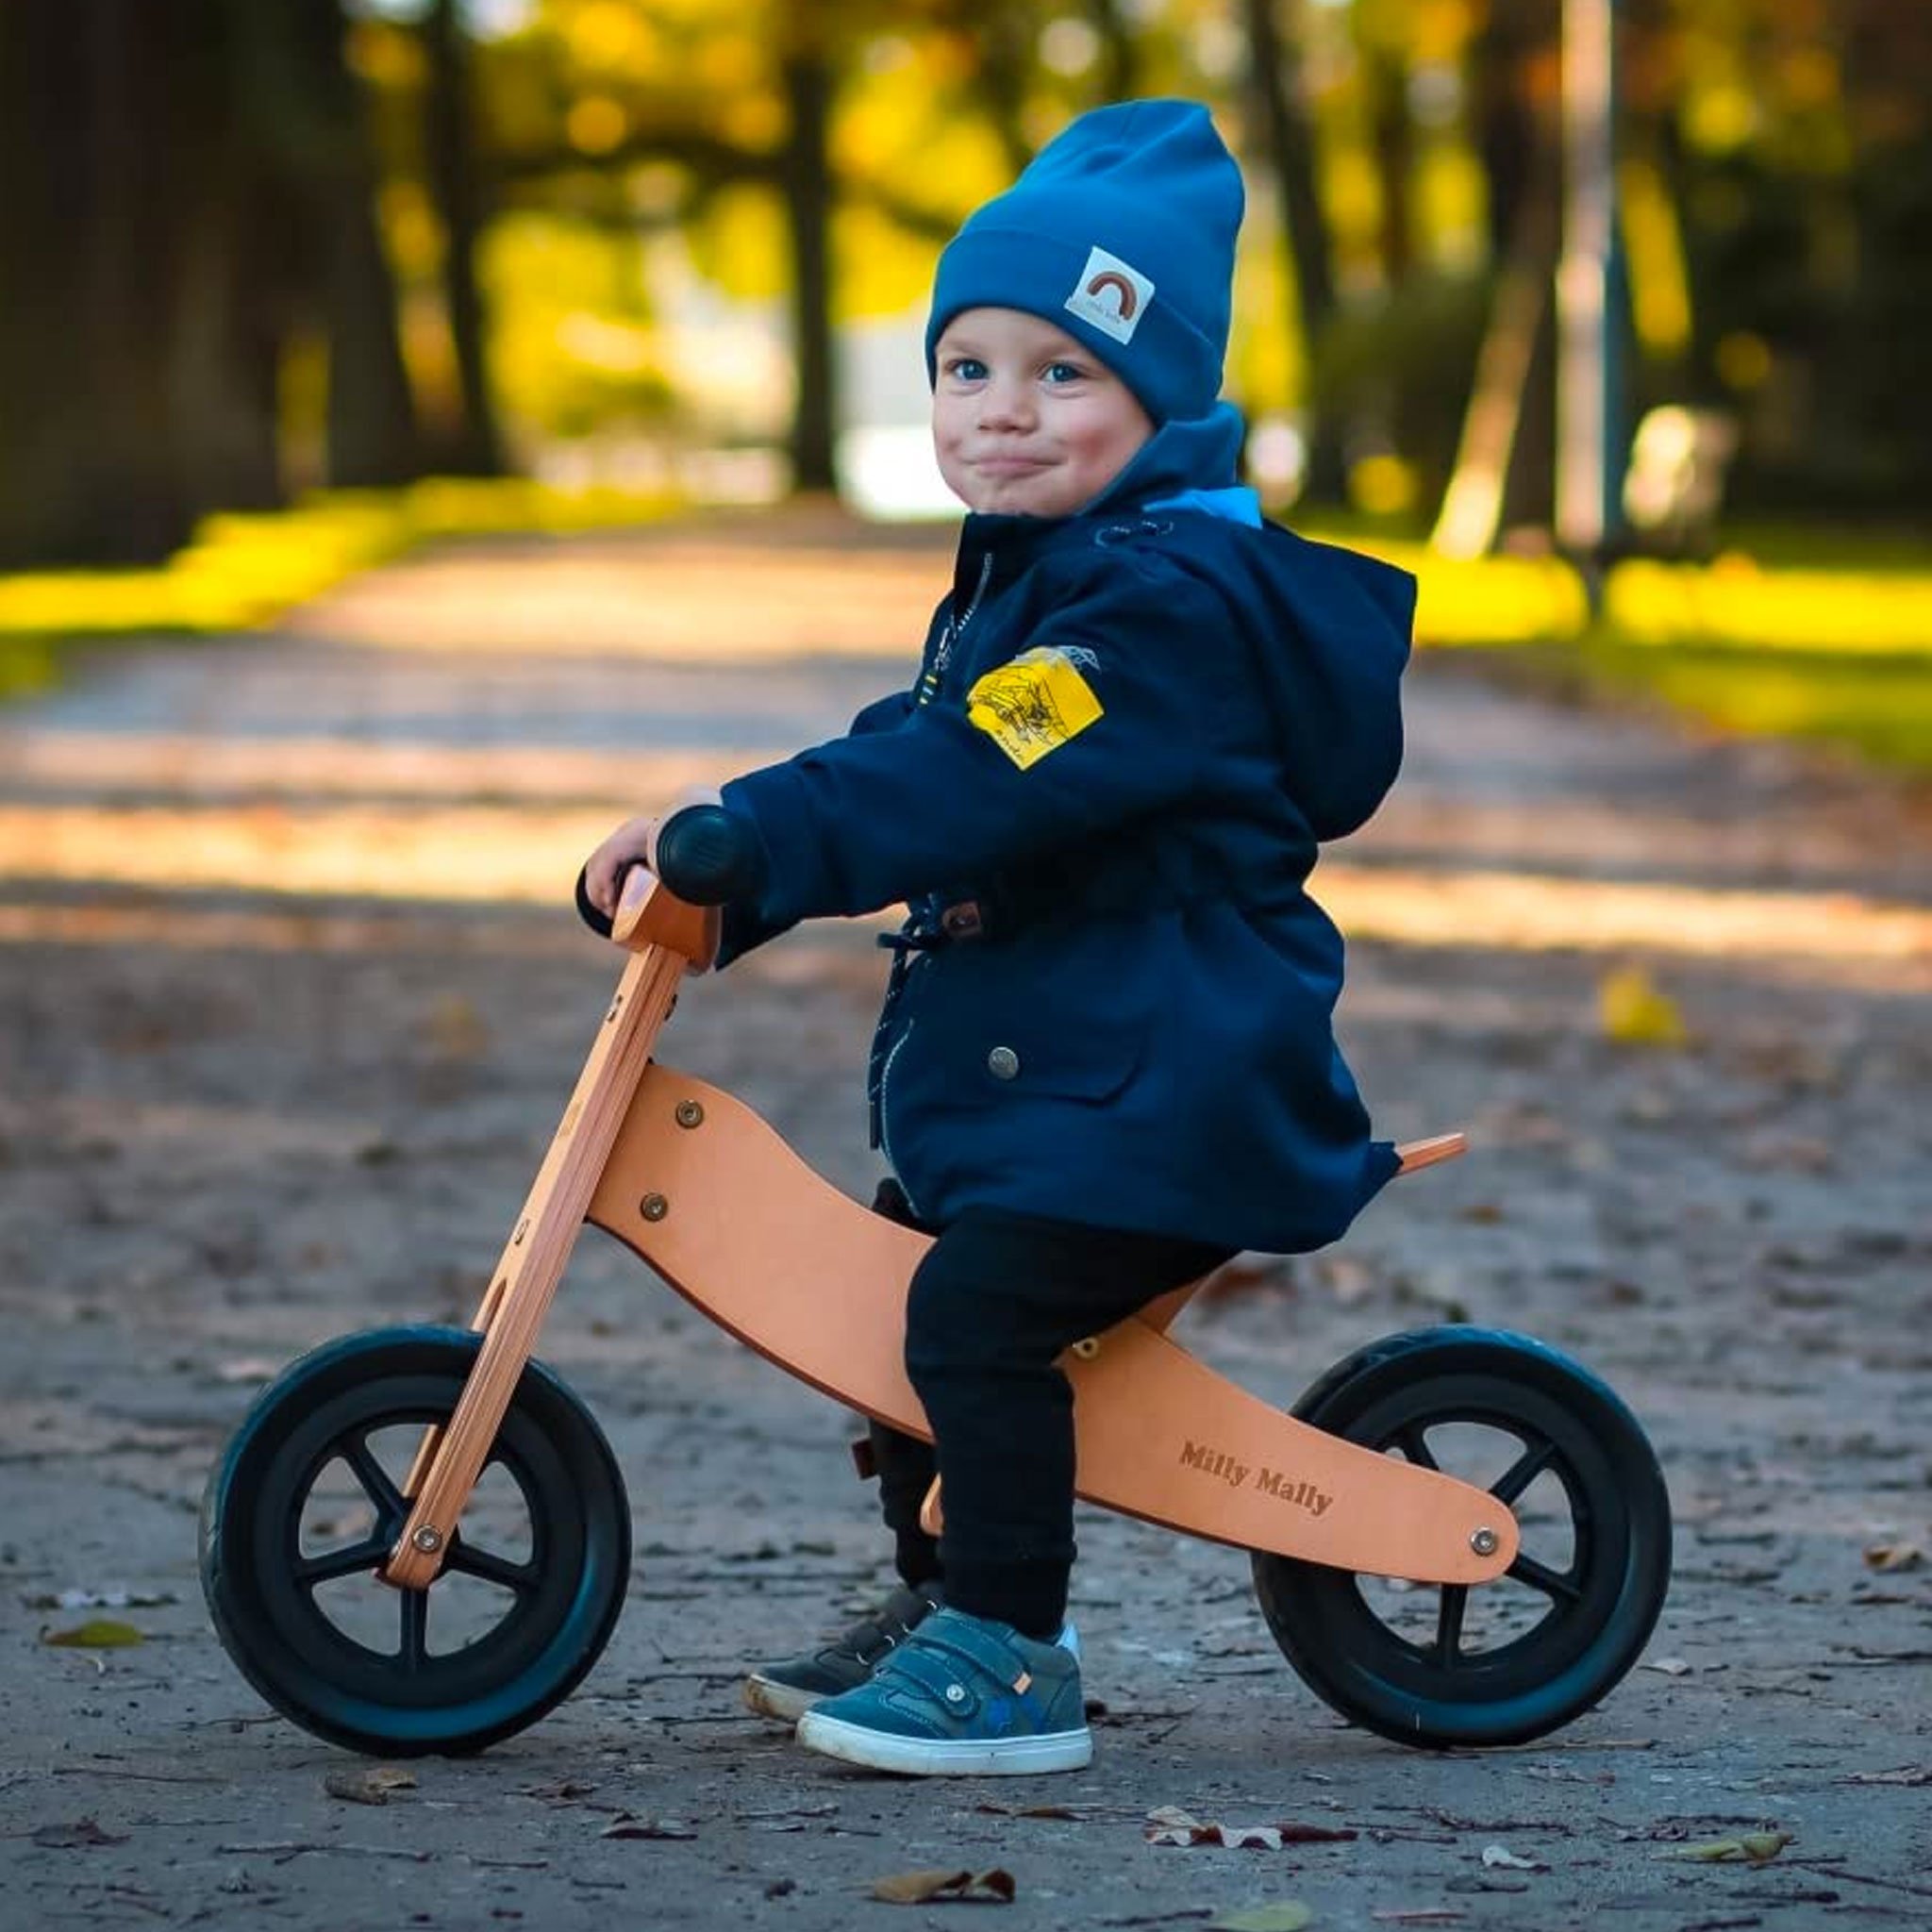 PM2770-triciclo-legno-cavalcabile-ruote-bici-senza-pedali-bambini-equilibrio-balance-bike-giochi-esterno-mobilita-crescita-legno-betulla-all-terrain-trasforma-lato.jpg